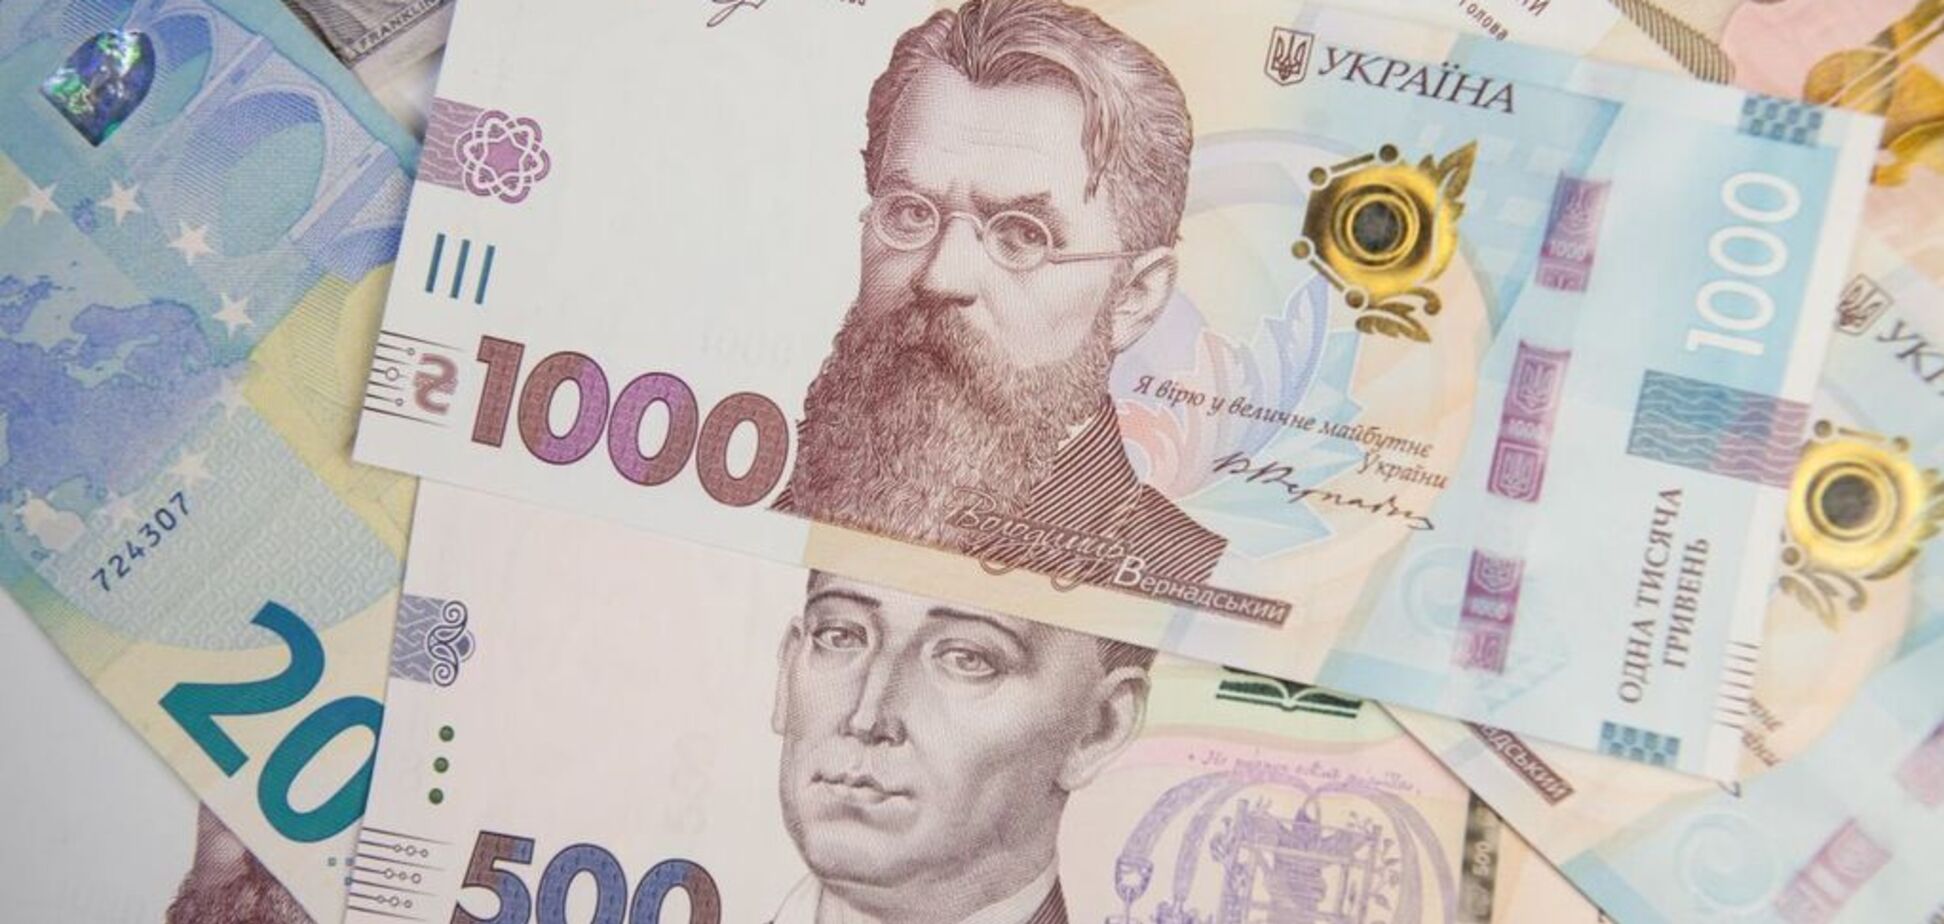 В Україні різко змінилася ситуація з фальшивими грошима